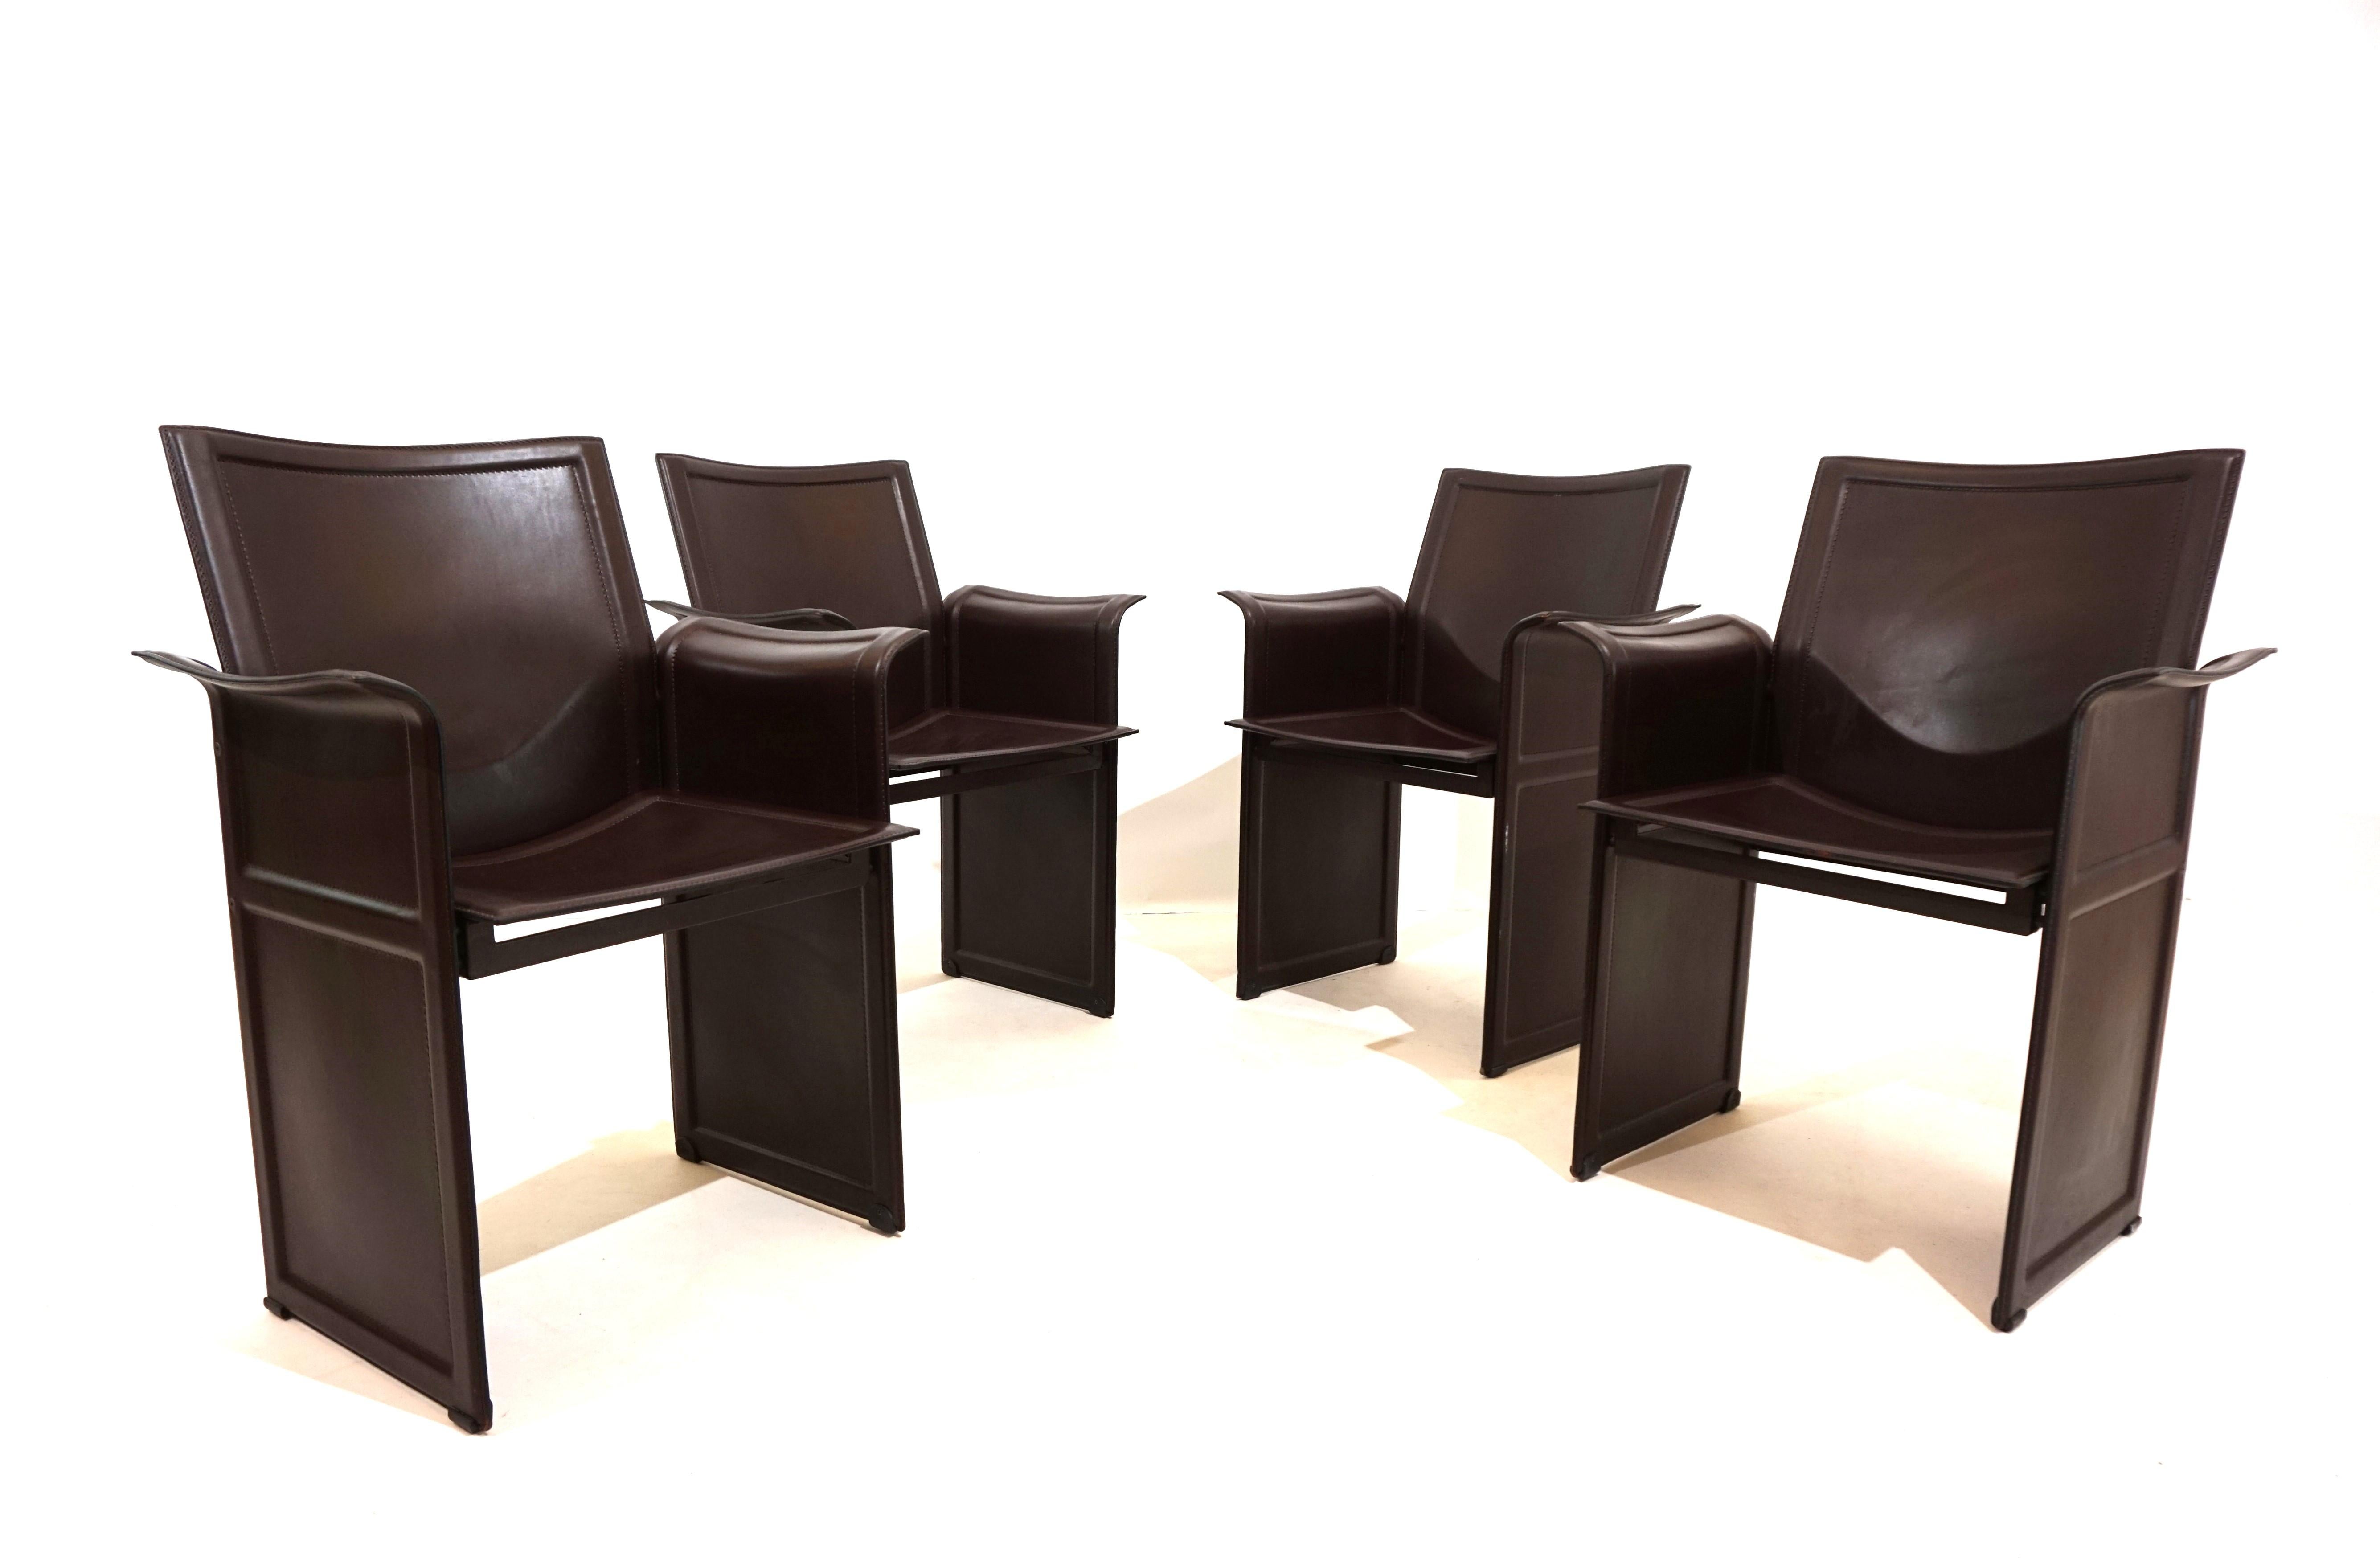 Das 4er-Set Matteo Grassi Esszimmerstühle aus dickem braunem Sattelleder in typisch italienischer Lederkunst.  Die Stühle sind in einem ausgezeichneten Zustand,  Fast neu, Zustand. Die Sitze und Rückenlehnen weisen kaum Gebrauchsspuren auf, und auch